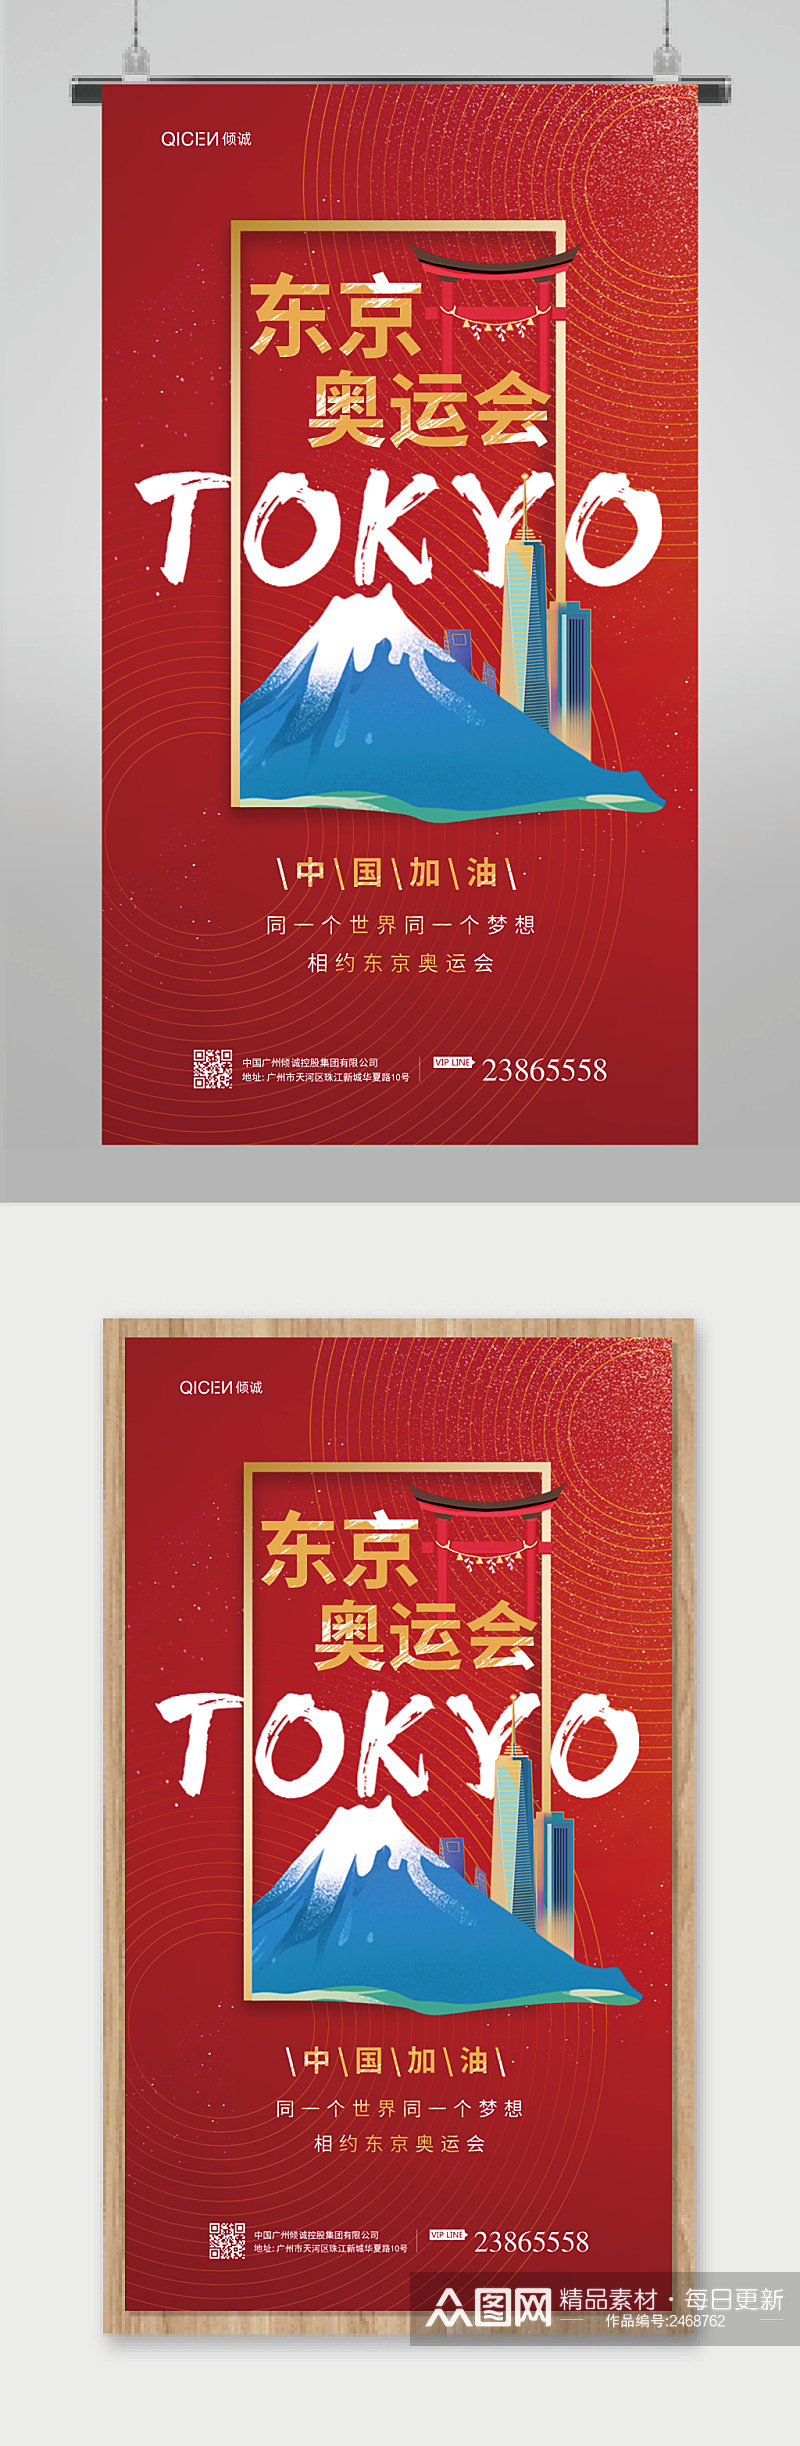 红色东京奥运会中国加油富士山奥运会海报素材